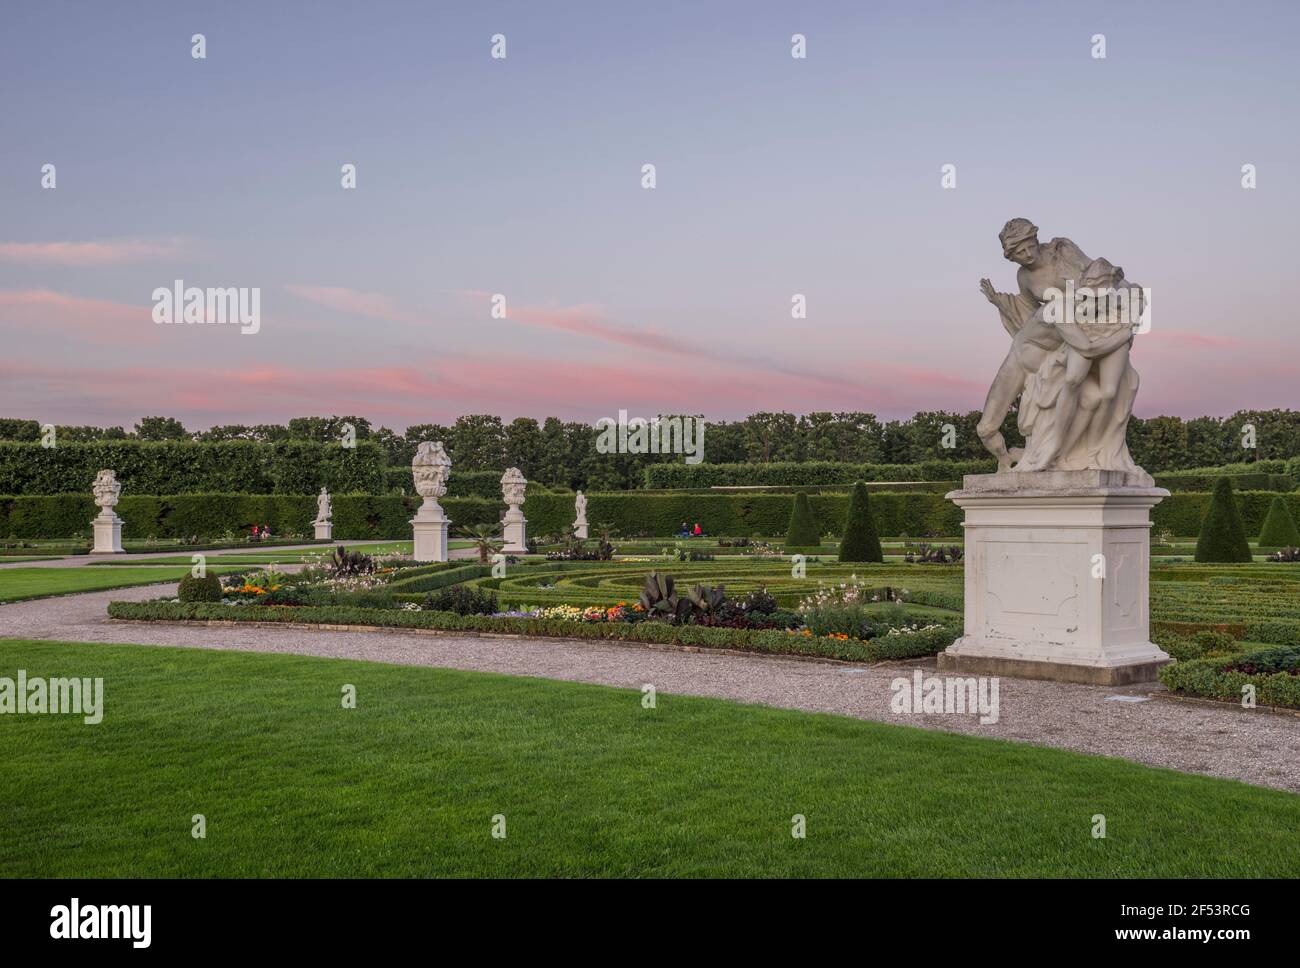 Geografia / viaggio, Germania, bassa Sassonia, Hannover, la statua 'Merkur & Psyche' dei giardini di Herrenhausen in serata, proprietà-liberata Foto Stock